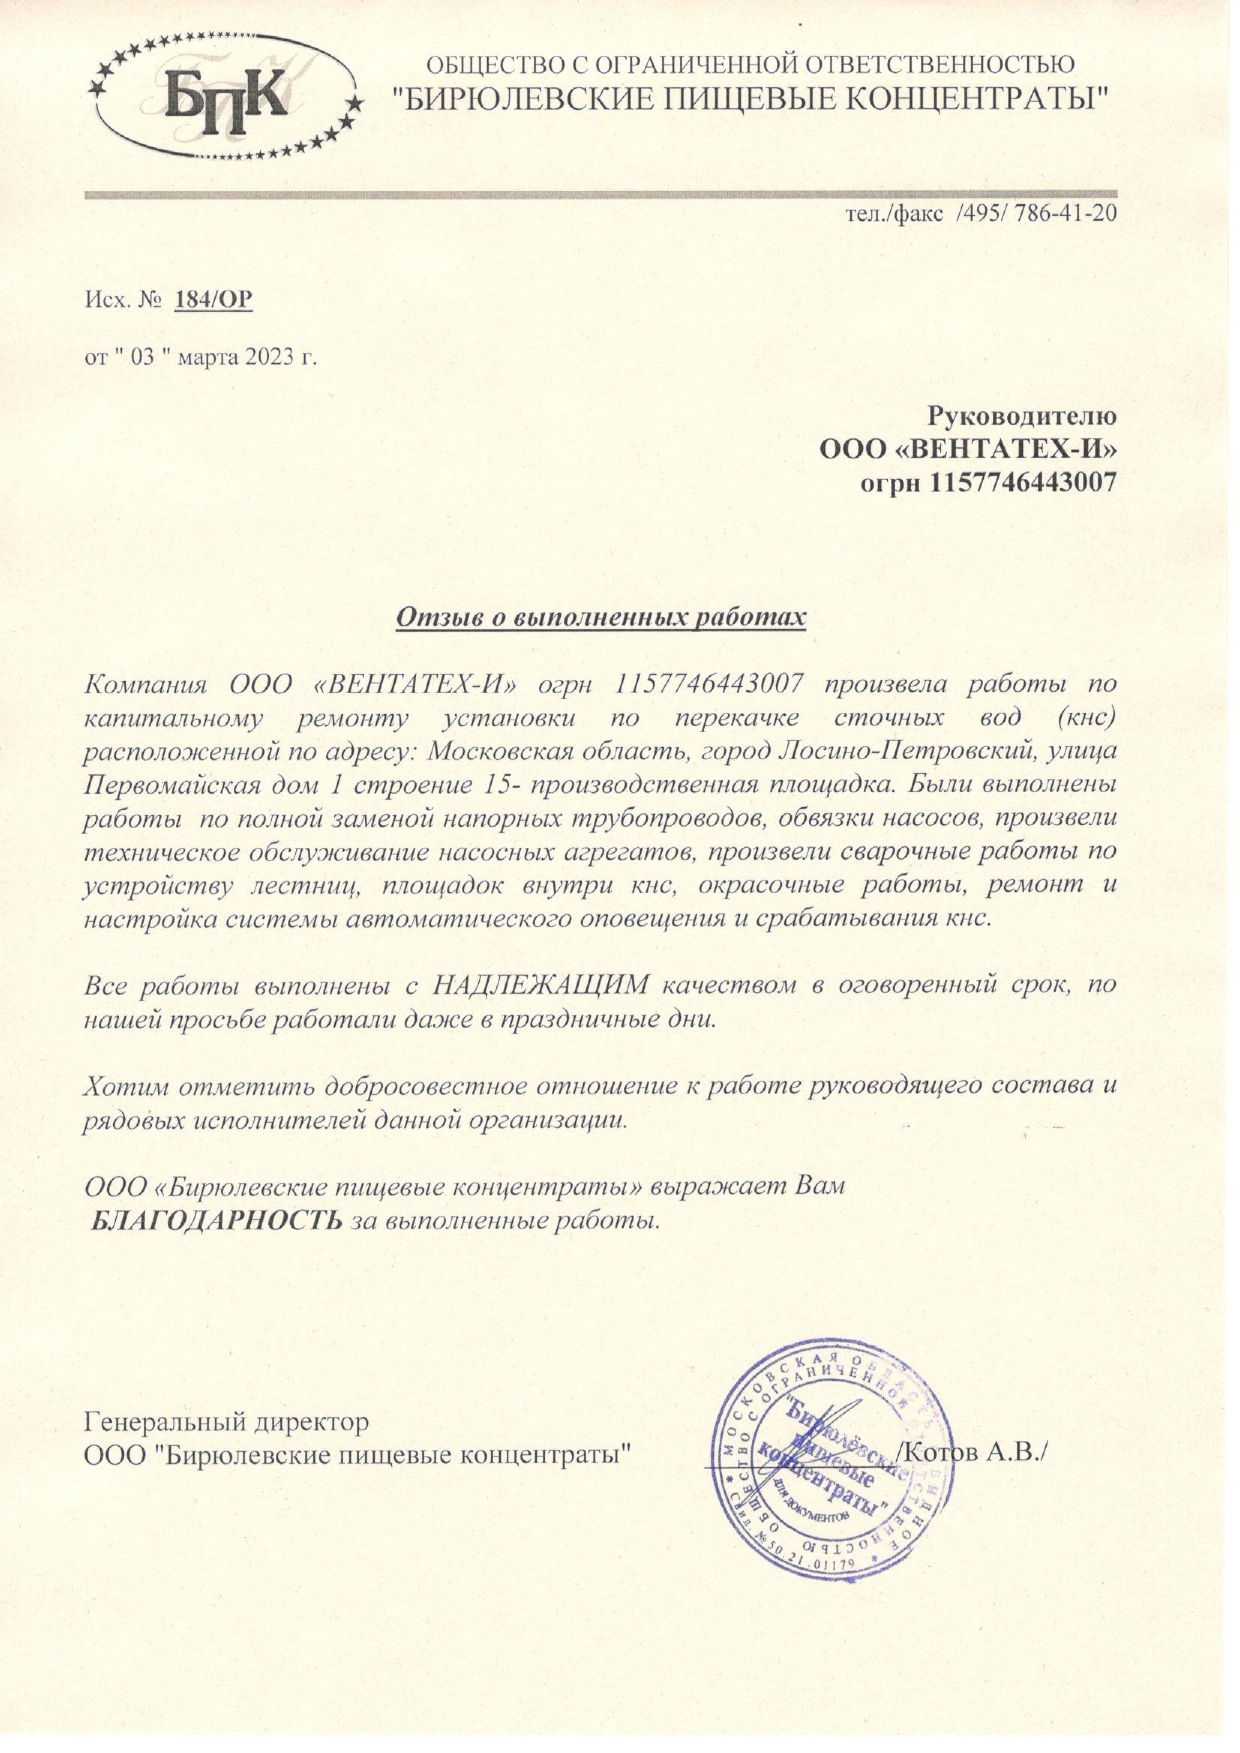 Благодарственное письмо от ООО "Бирюлевские пищевые концентраты"